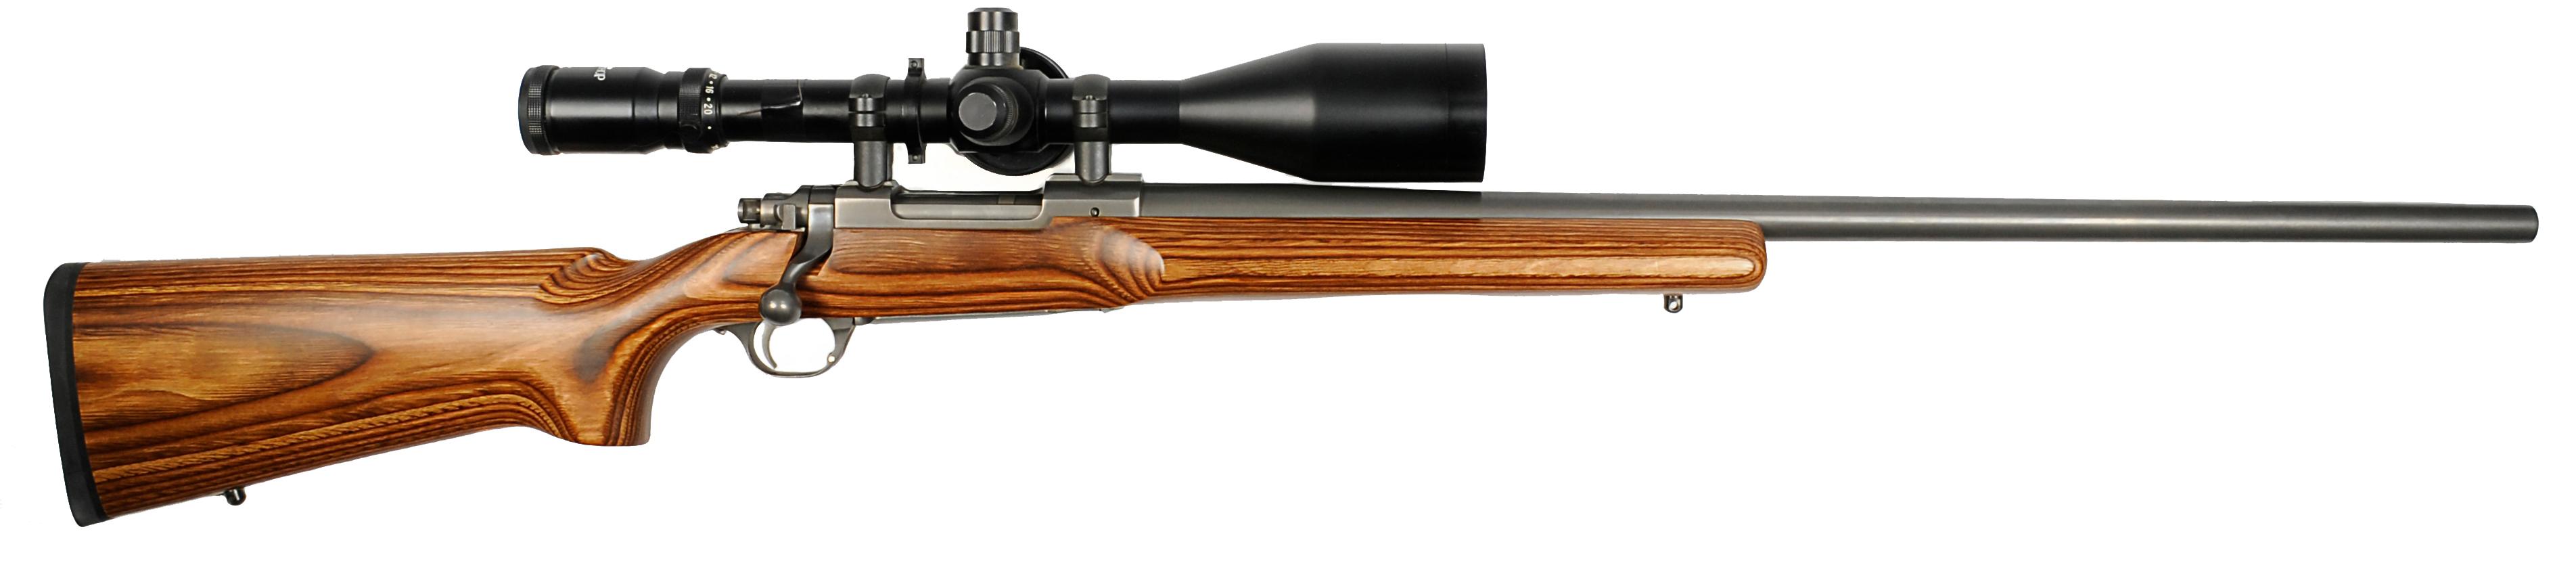 Ruger Model 77 MK-II .308 Bolt-Action Rifle FFL: 789-10361 (PAG1)